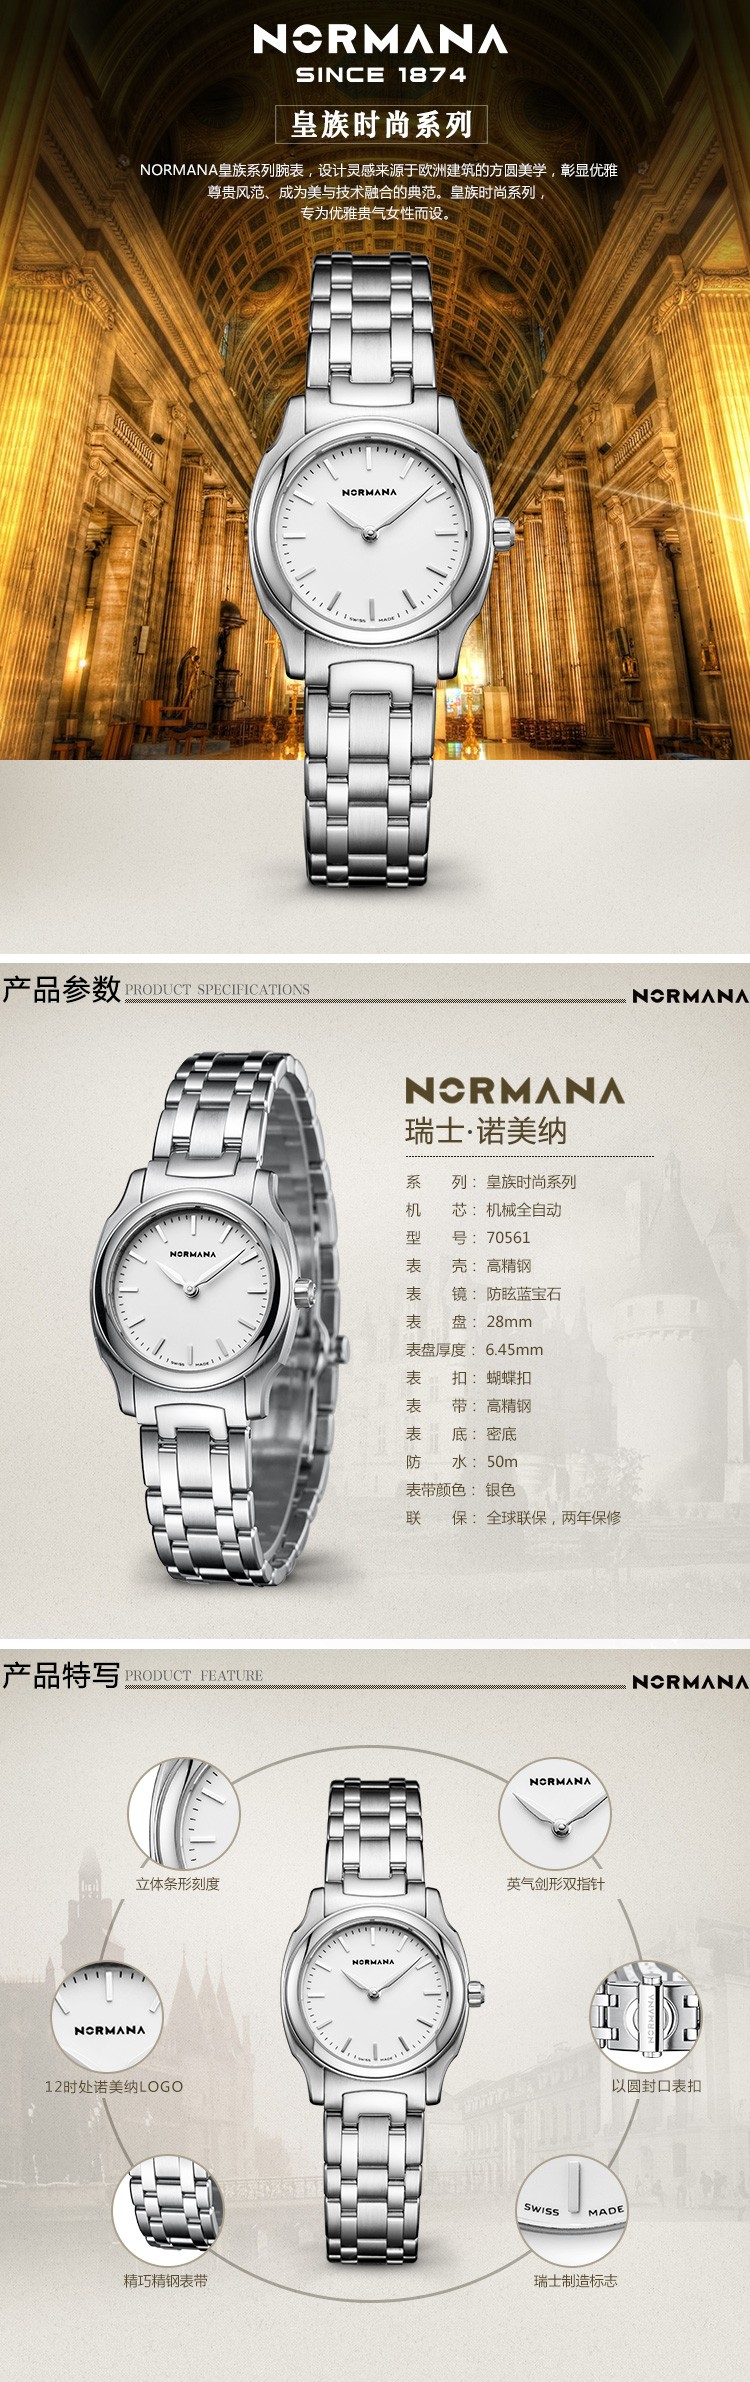 诺美纳NORMANA-皇族时尚系列 70561 石英女表